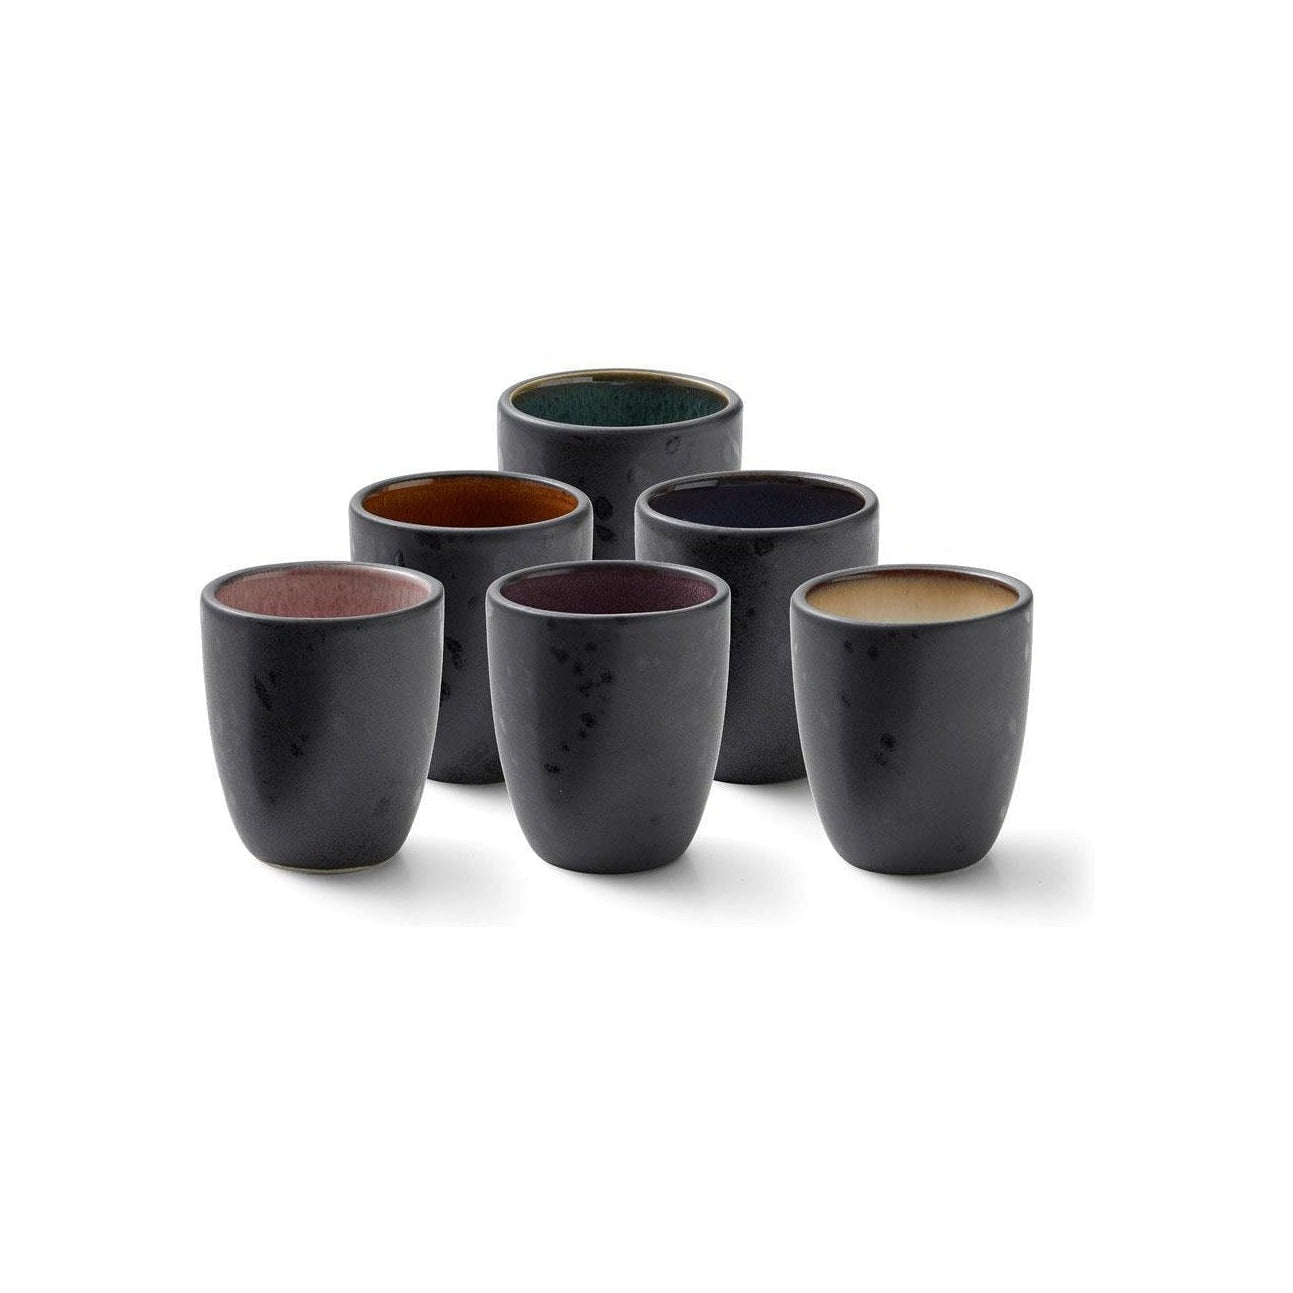 Bitz Espresso kopper sæt, forskellige farver, 6 stk.